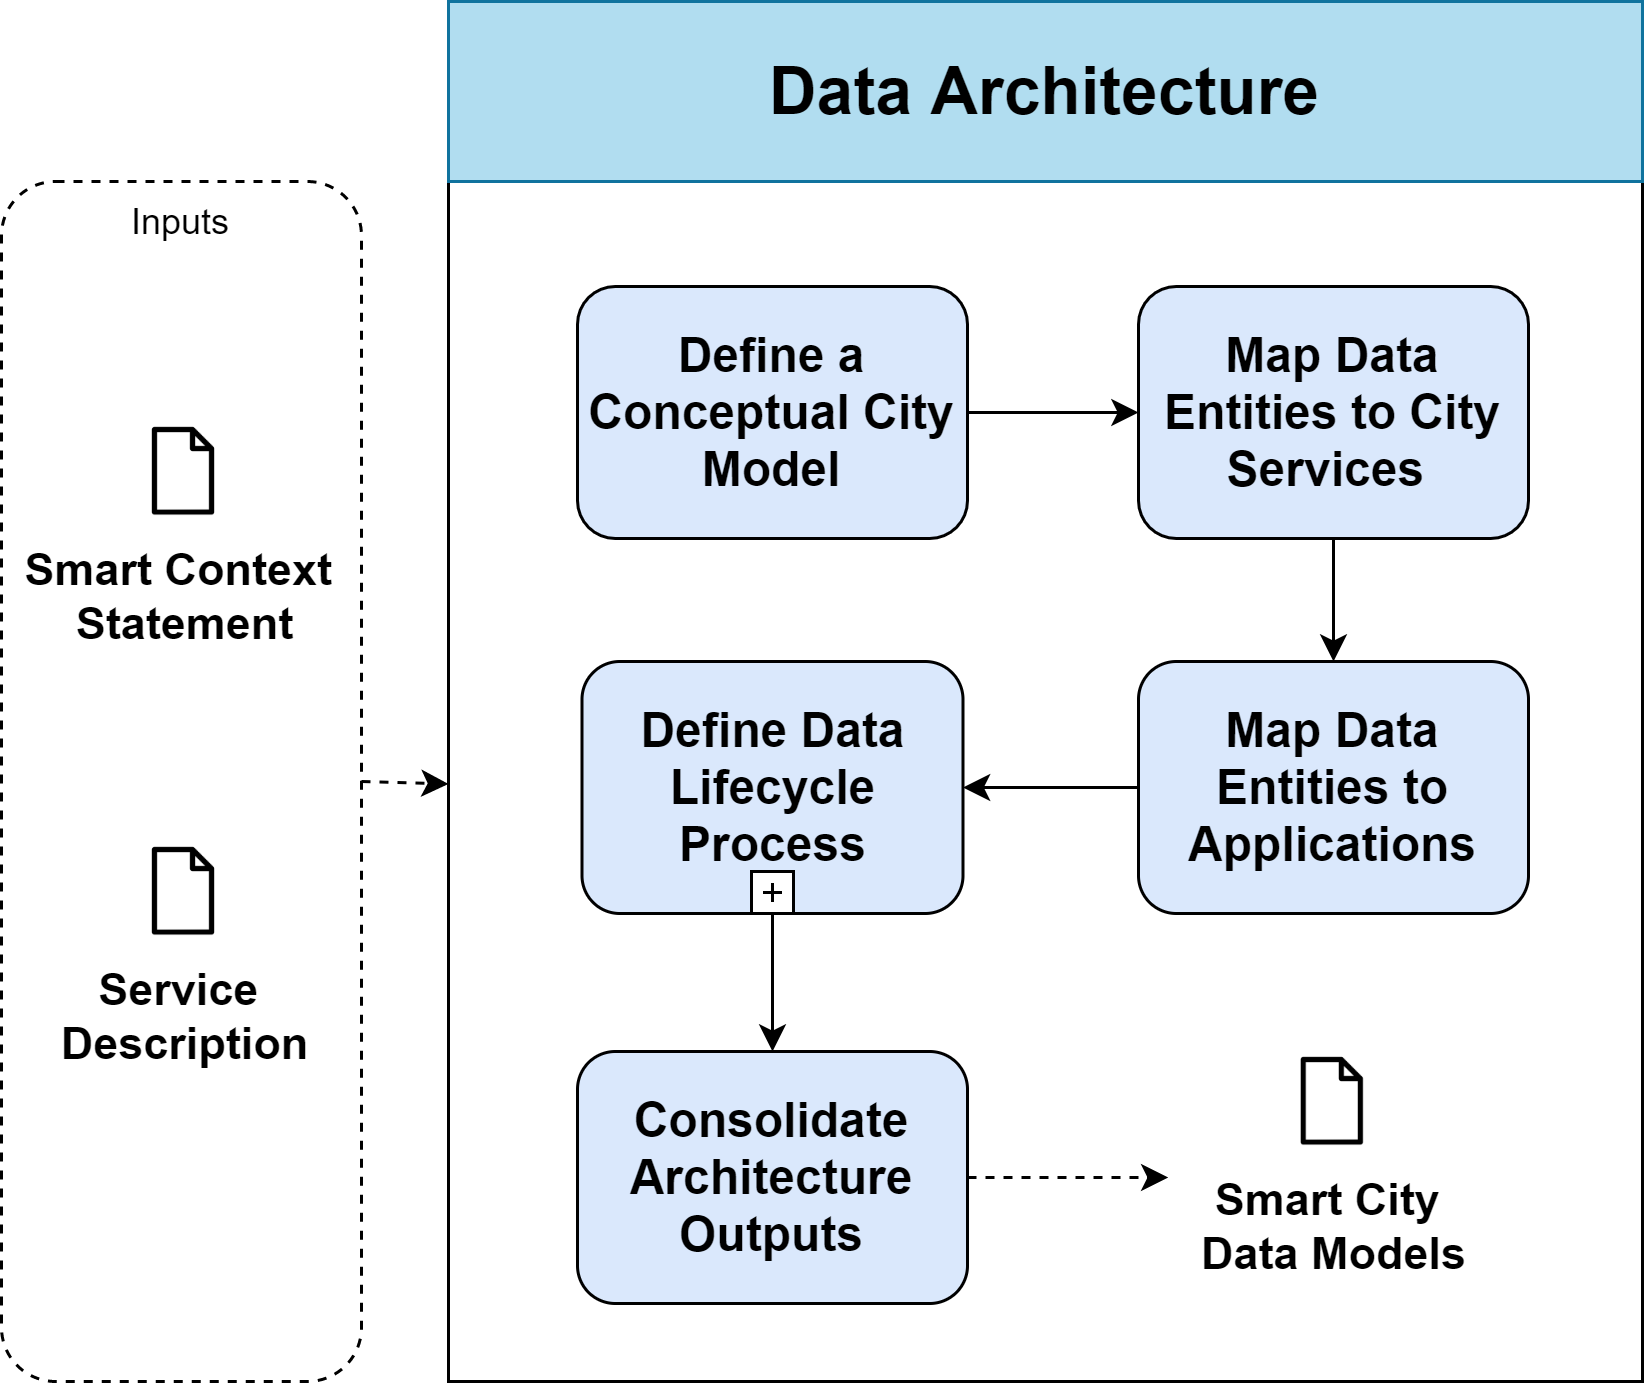 Data Architecture - Enterprise Architecture Management for Smart Cities